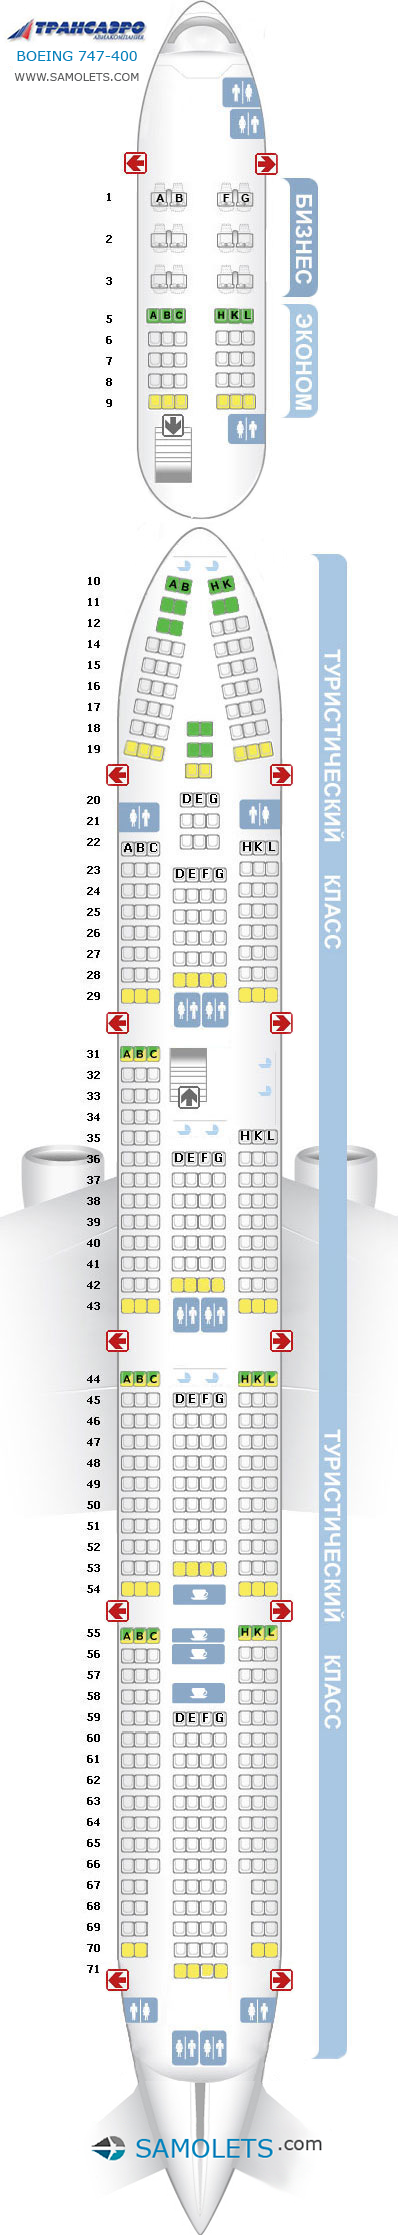 Схема салона Боинг 747-400 Трансаэро